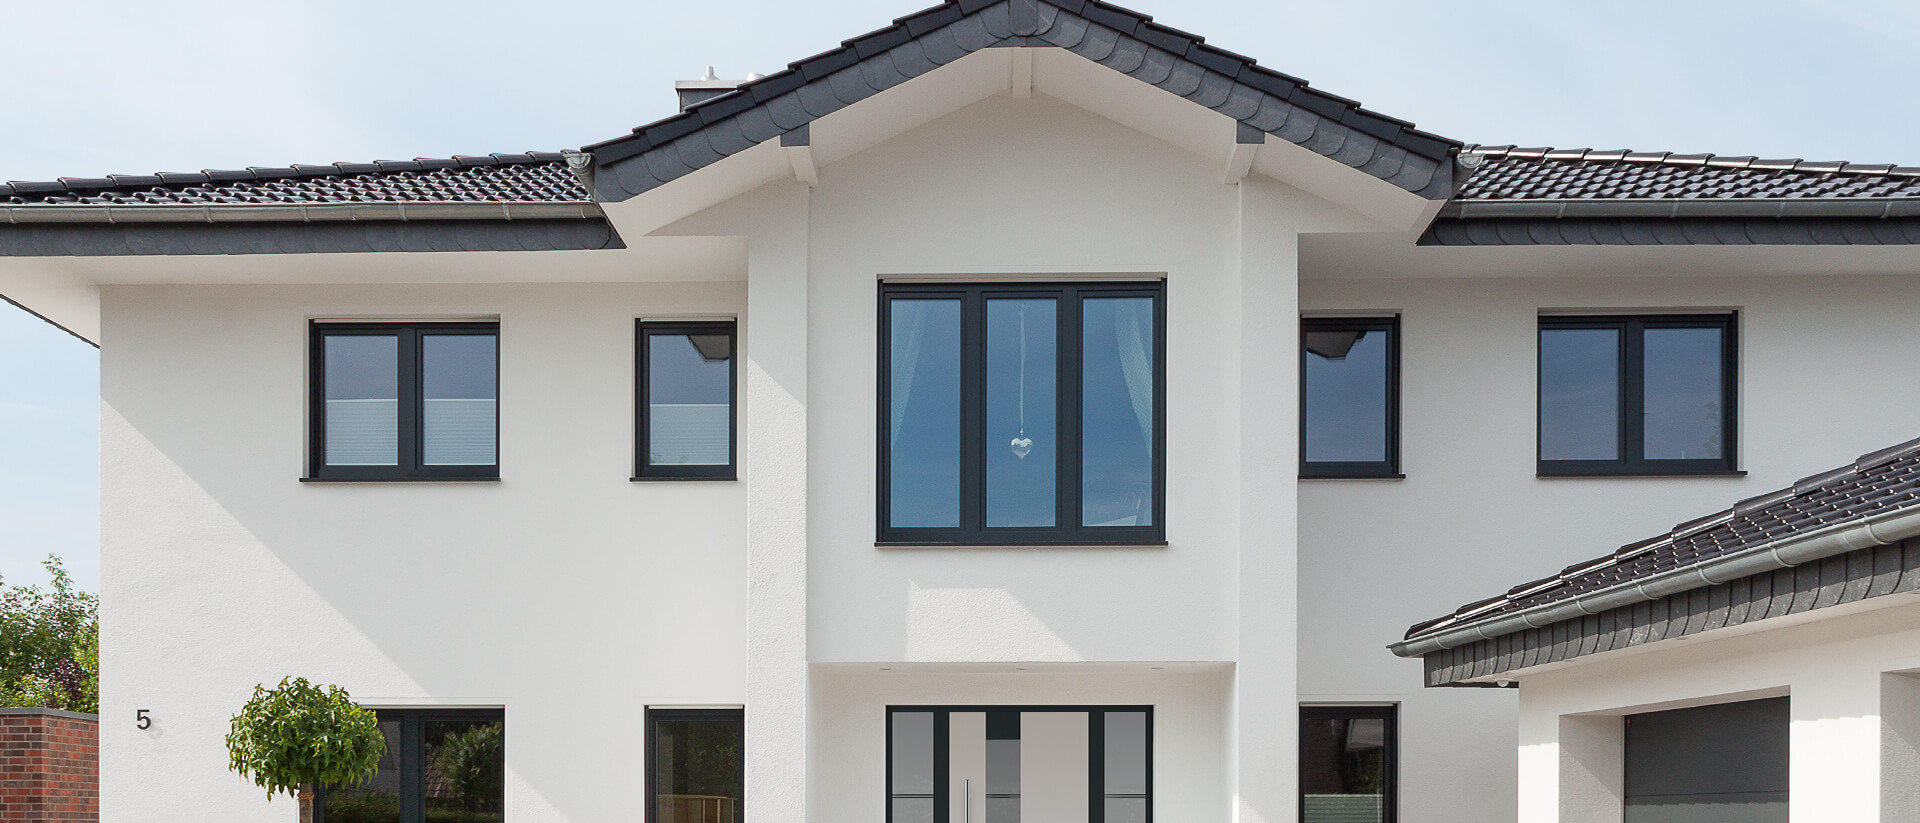 Fenster und Haustür mit schwarzem Rahmen im Neubau mit weißem Putz